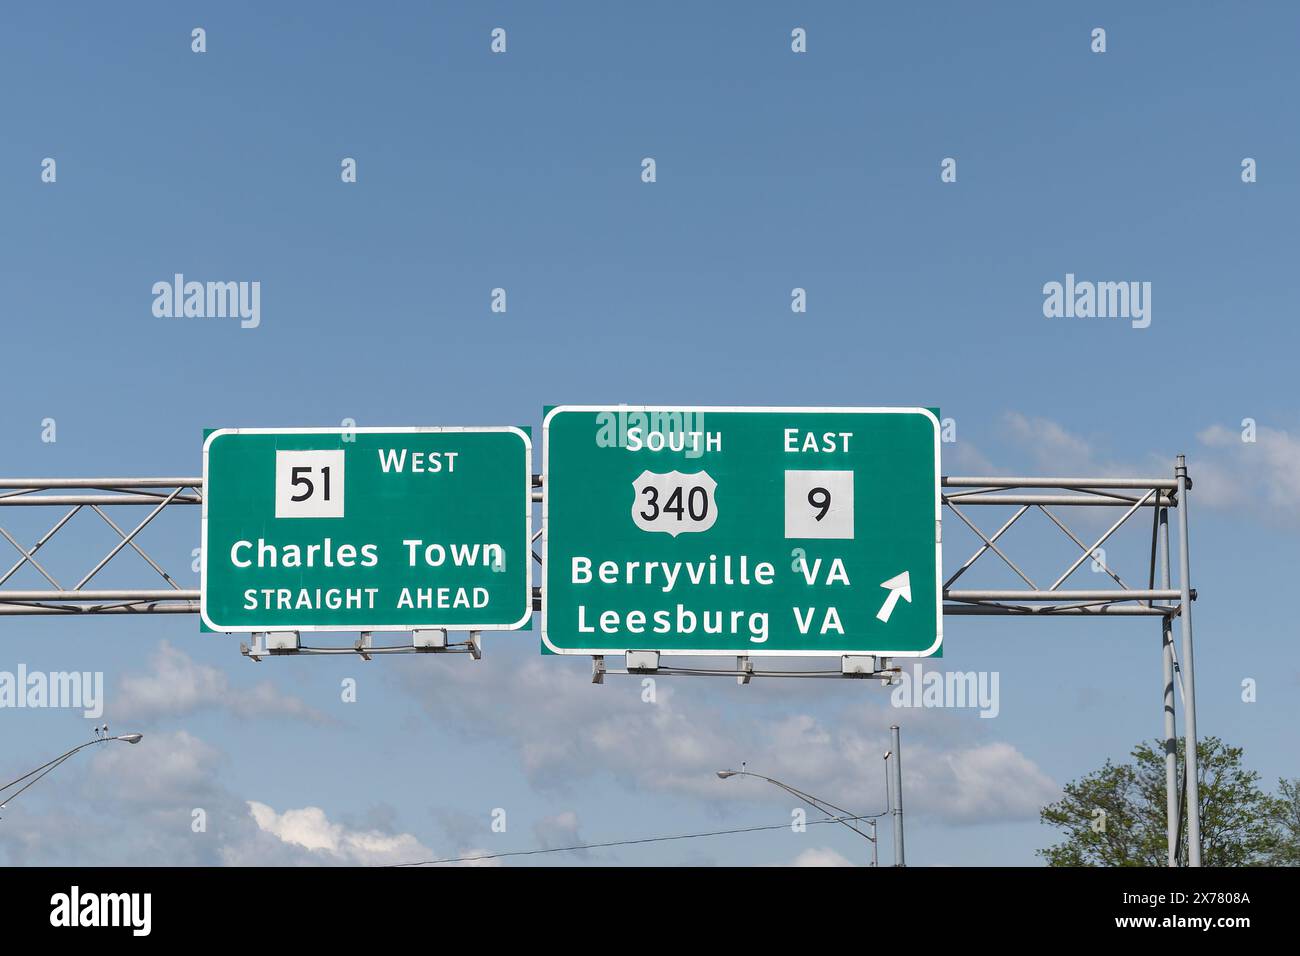 Panneau de sortie à Charles Town, Virginie occidentale pour WV-51 West vers Charles Town, US-340 South et WV-9 vers Berryville, Virginie et Leesburg, Virginie Banque D'Images